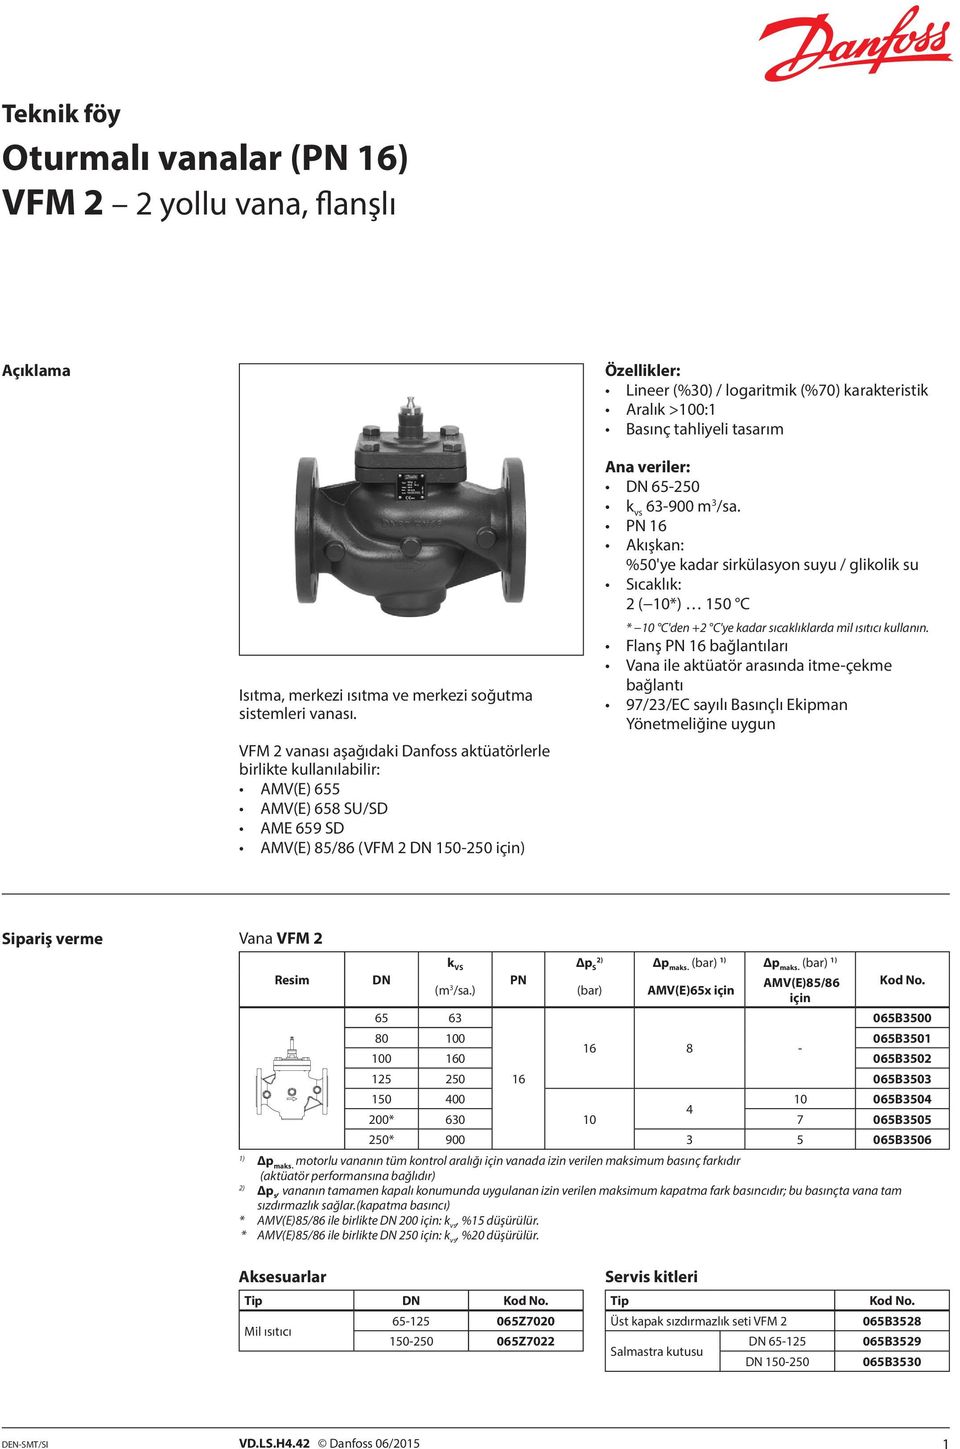 VFM 2 vanası aşağıdaki Danfoss aktüatörlerle birlikte kullanılabilir: AMV(E) 655 AMV(E) 658 SU/SD AME 659 SD AMV(E) 85/86 (VFM 2 DN 150-250 için) Ana veriler: DN 65-250 k vs 63-900 m 3 /sa.